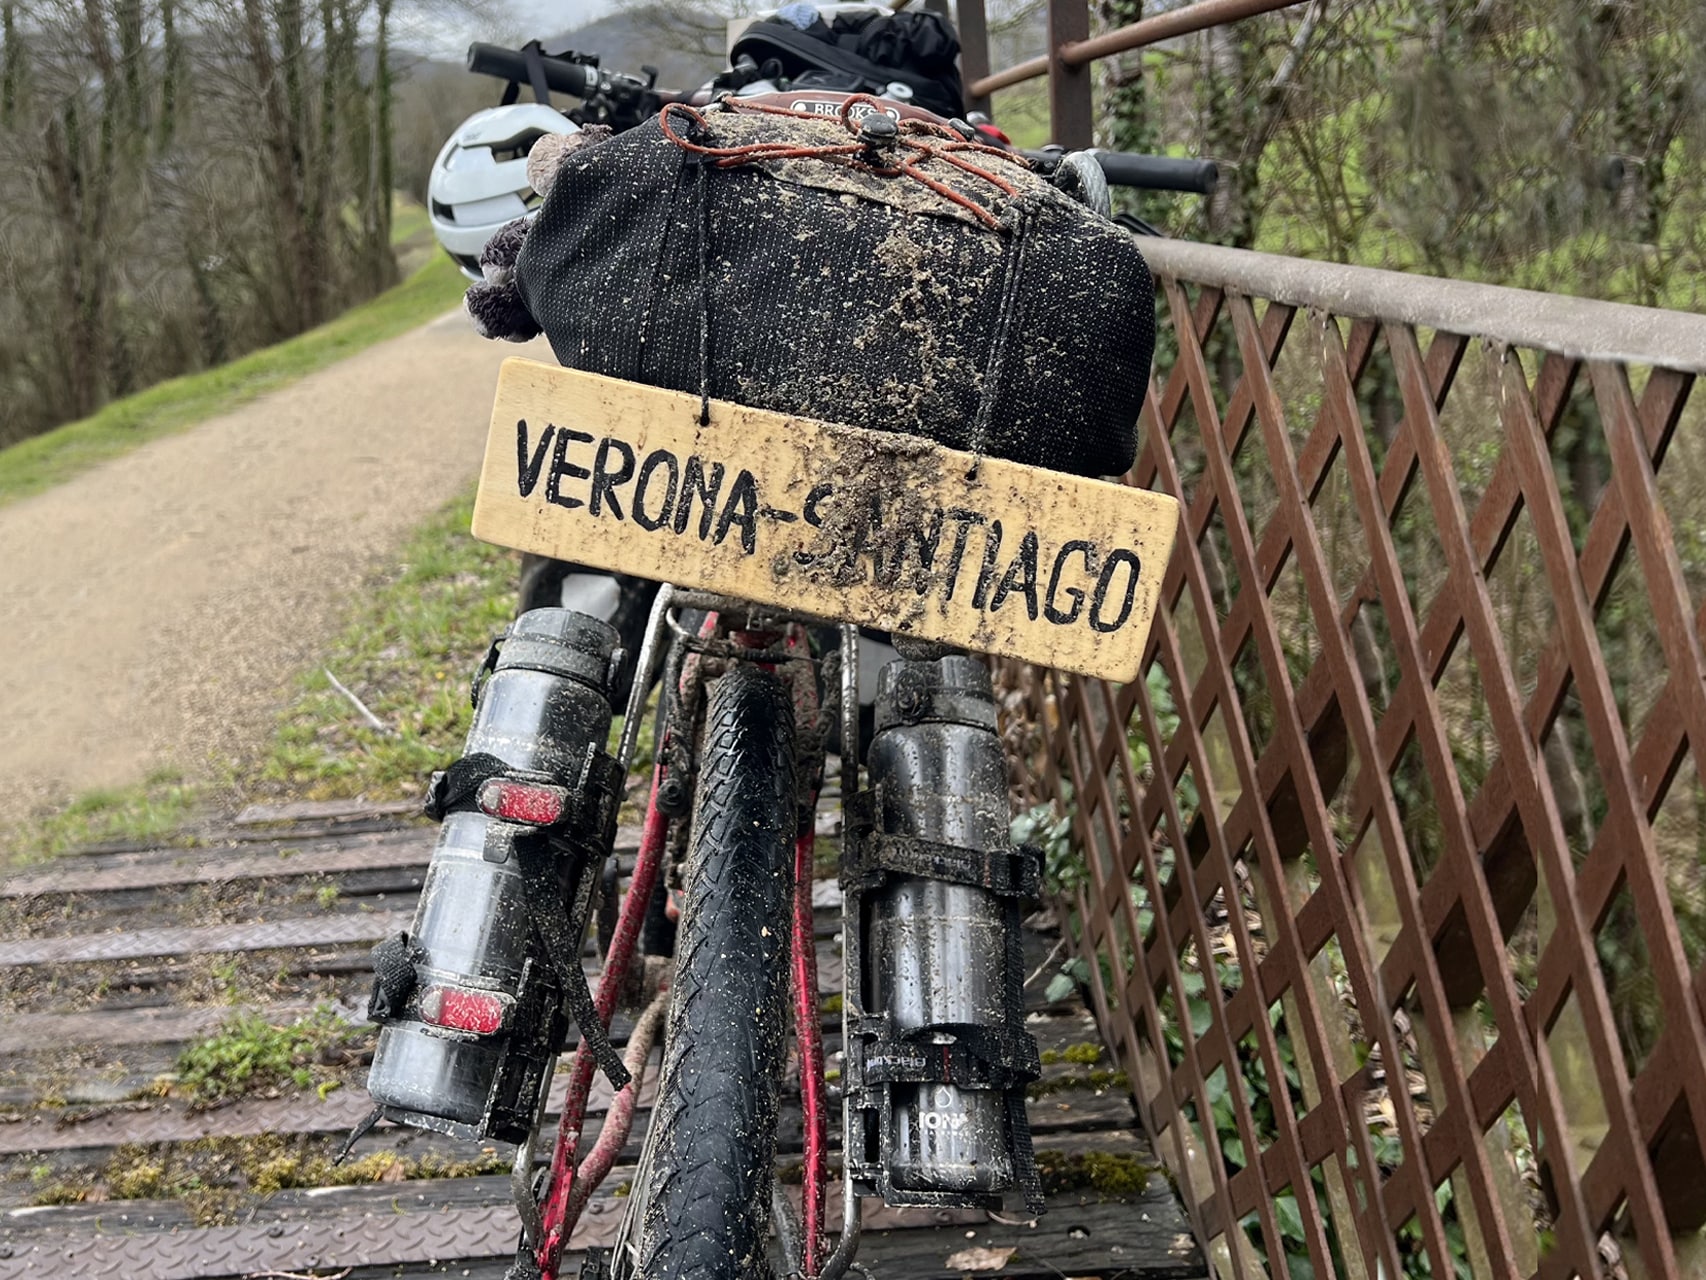 Bici utilizzata da Roberto Adami per il viaggio in solitaria verso Santiago de Compostela partendo da Verona